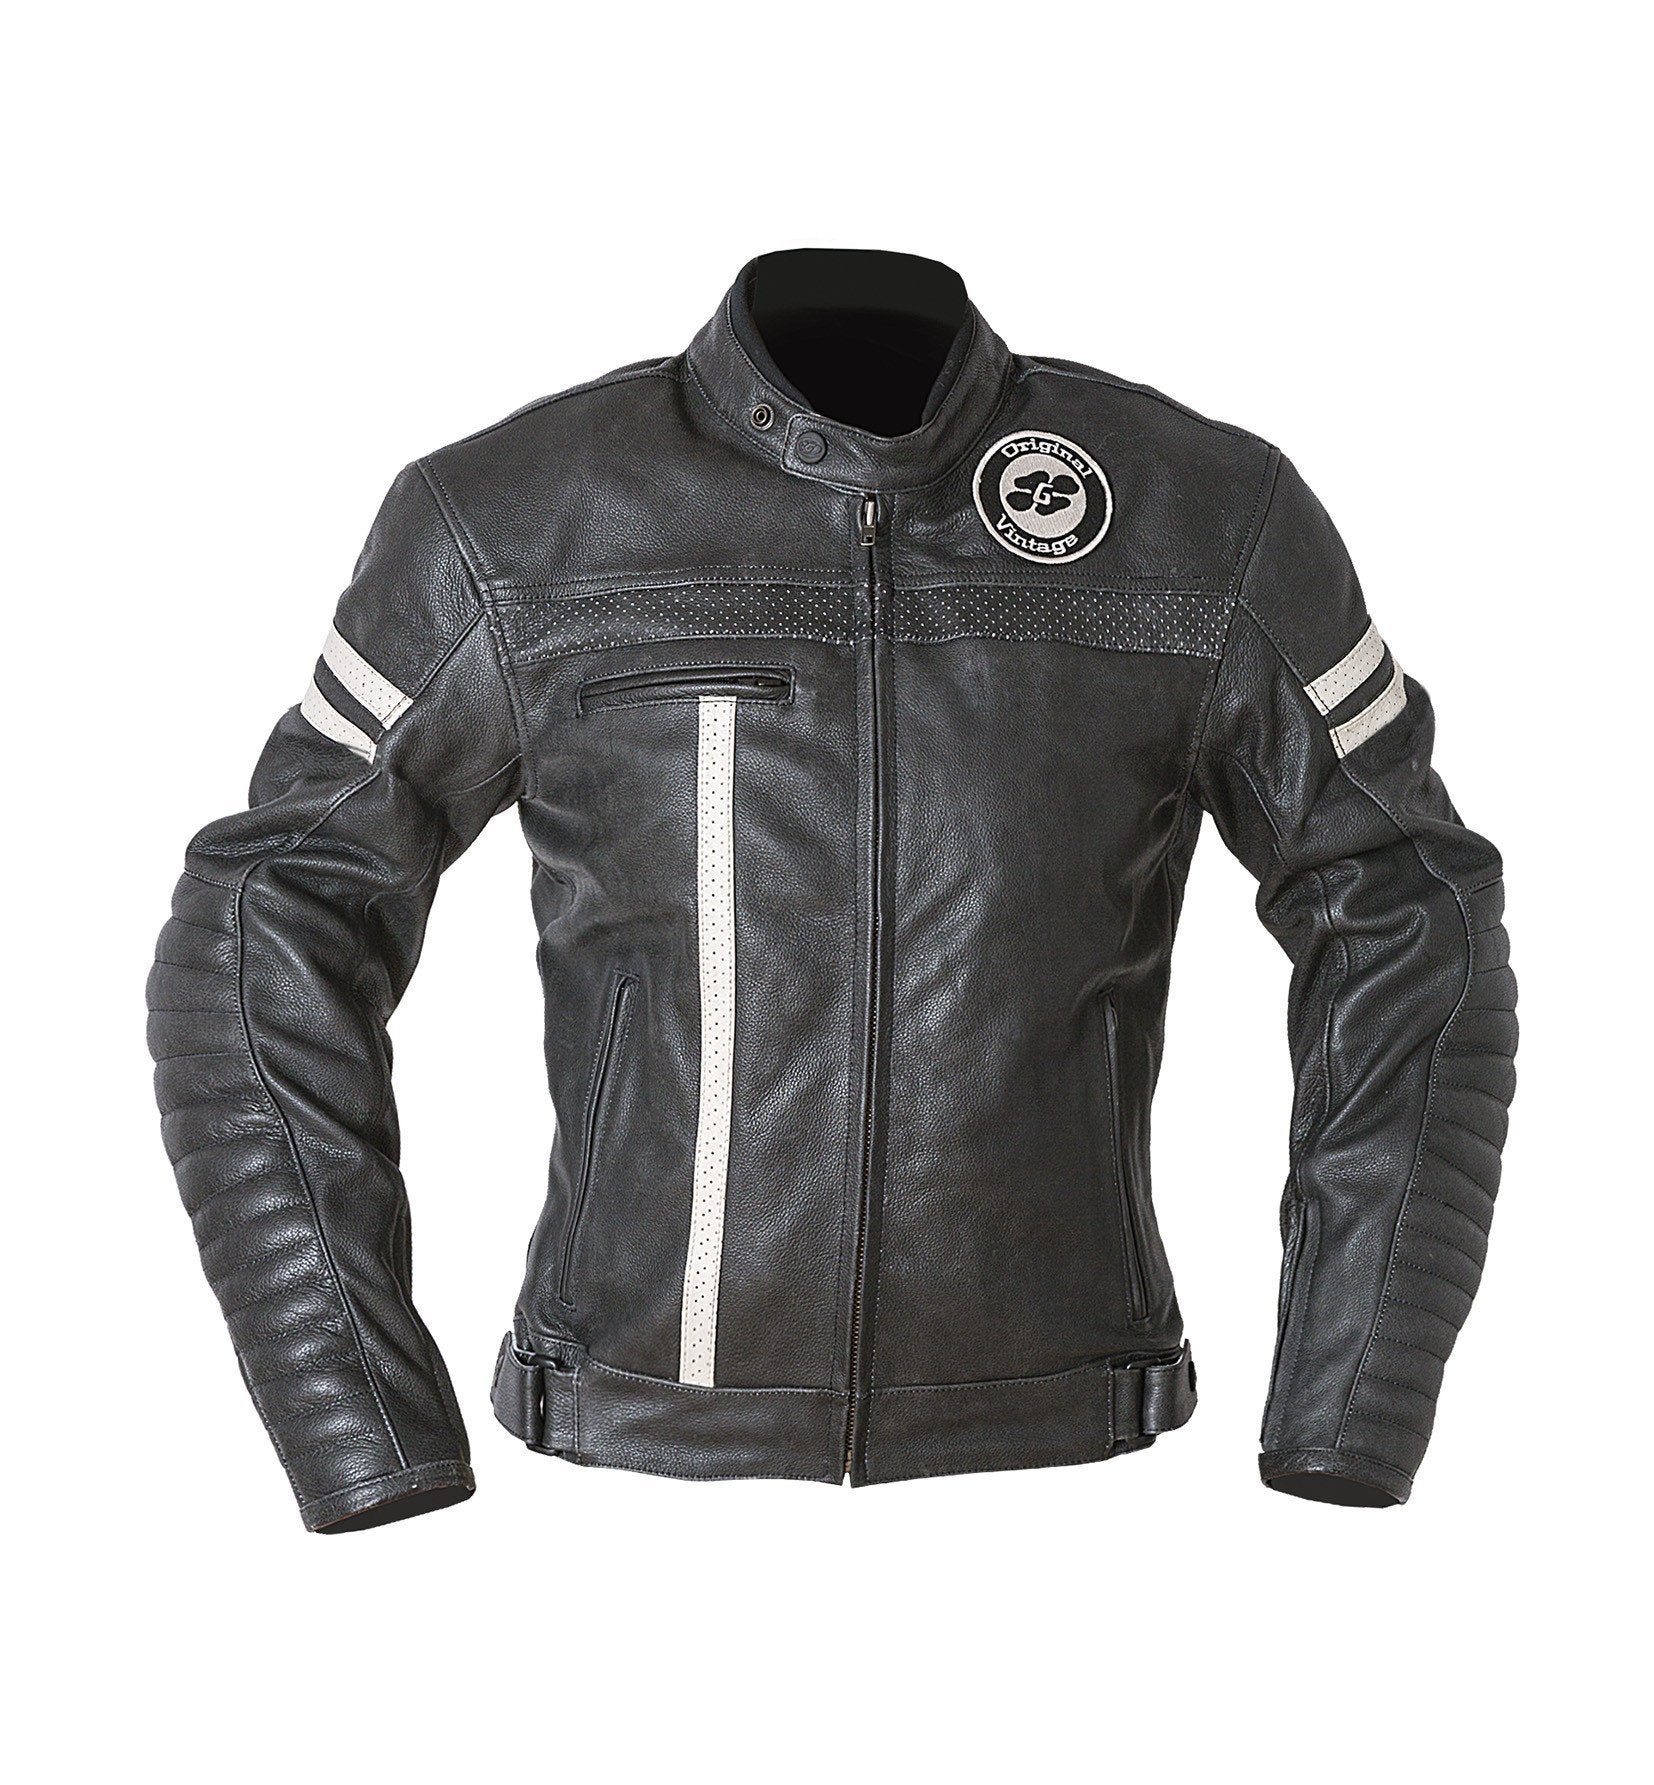 Garibaldi - Garibaldi Moka Racer Vintage Black Leather Ladies Jacket - Ladies Jackets - Salt Flats Clothing